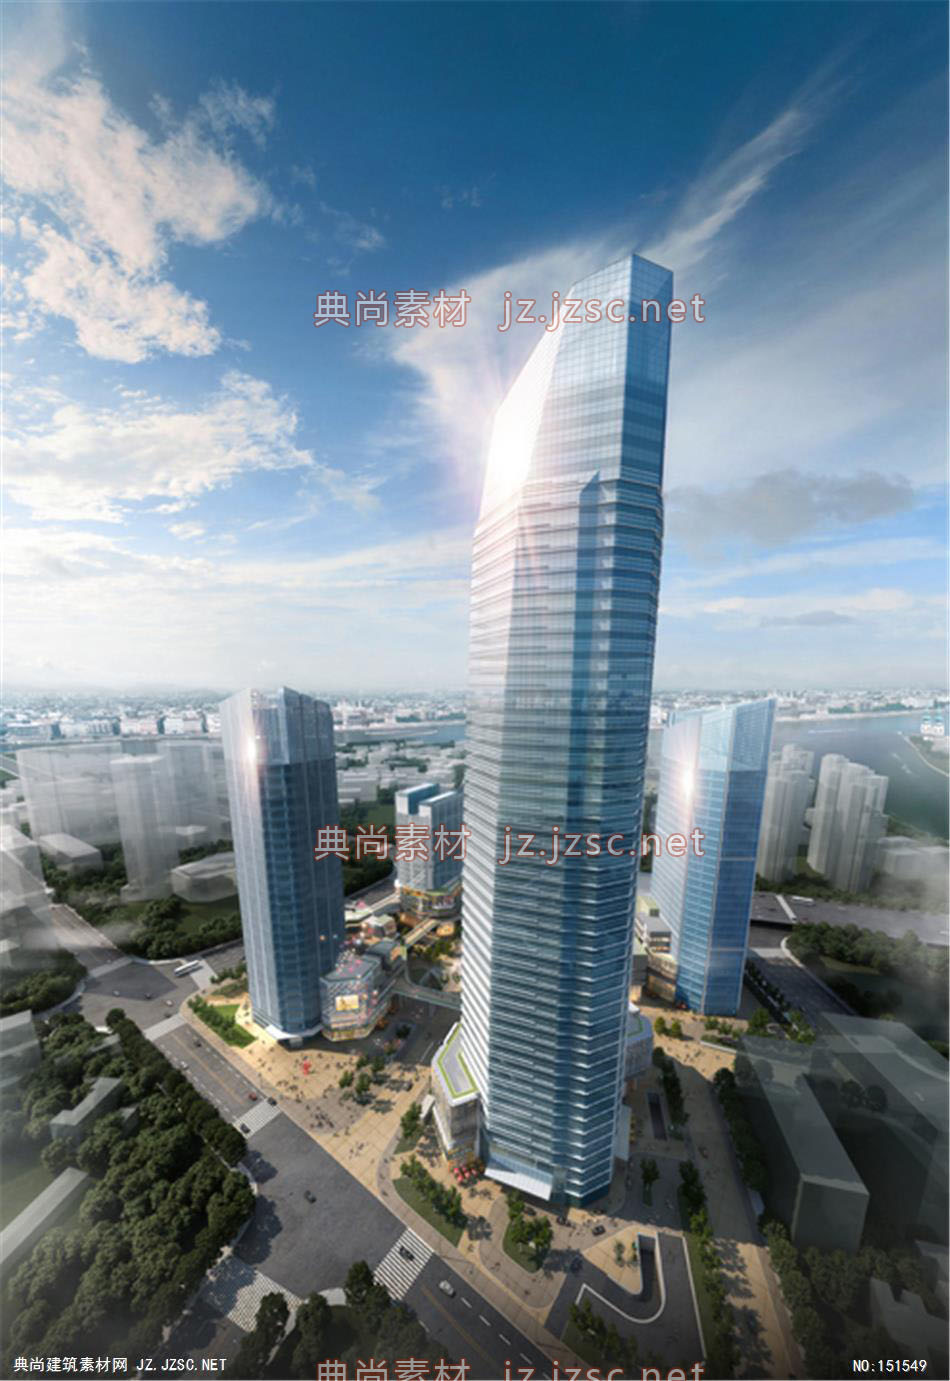 宁波绿地中心01高层办公效果图+交通及医疗建筑效果图